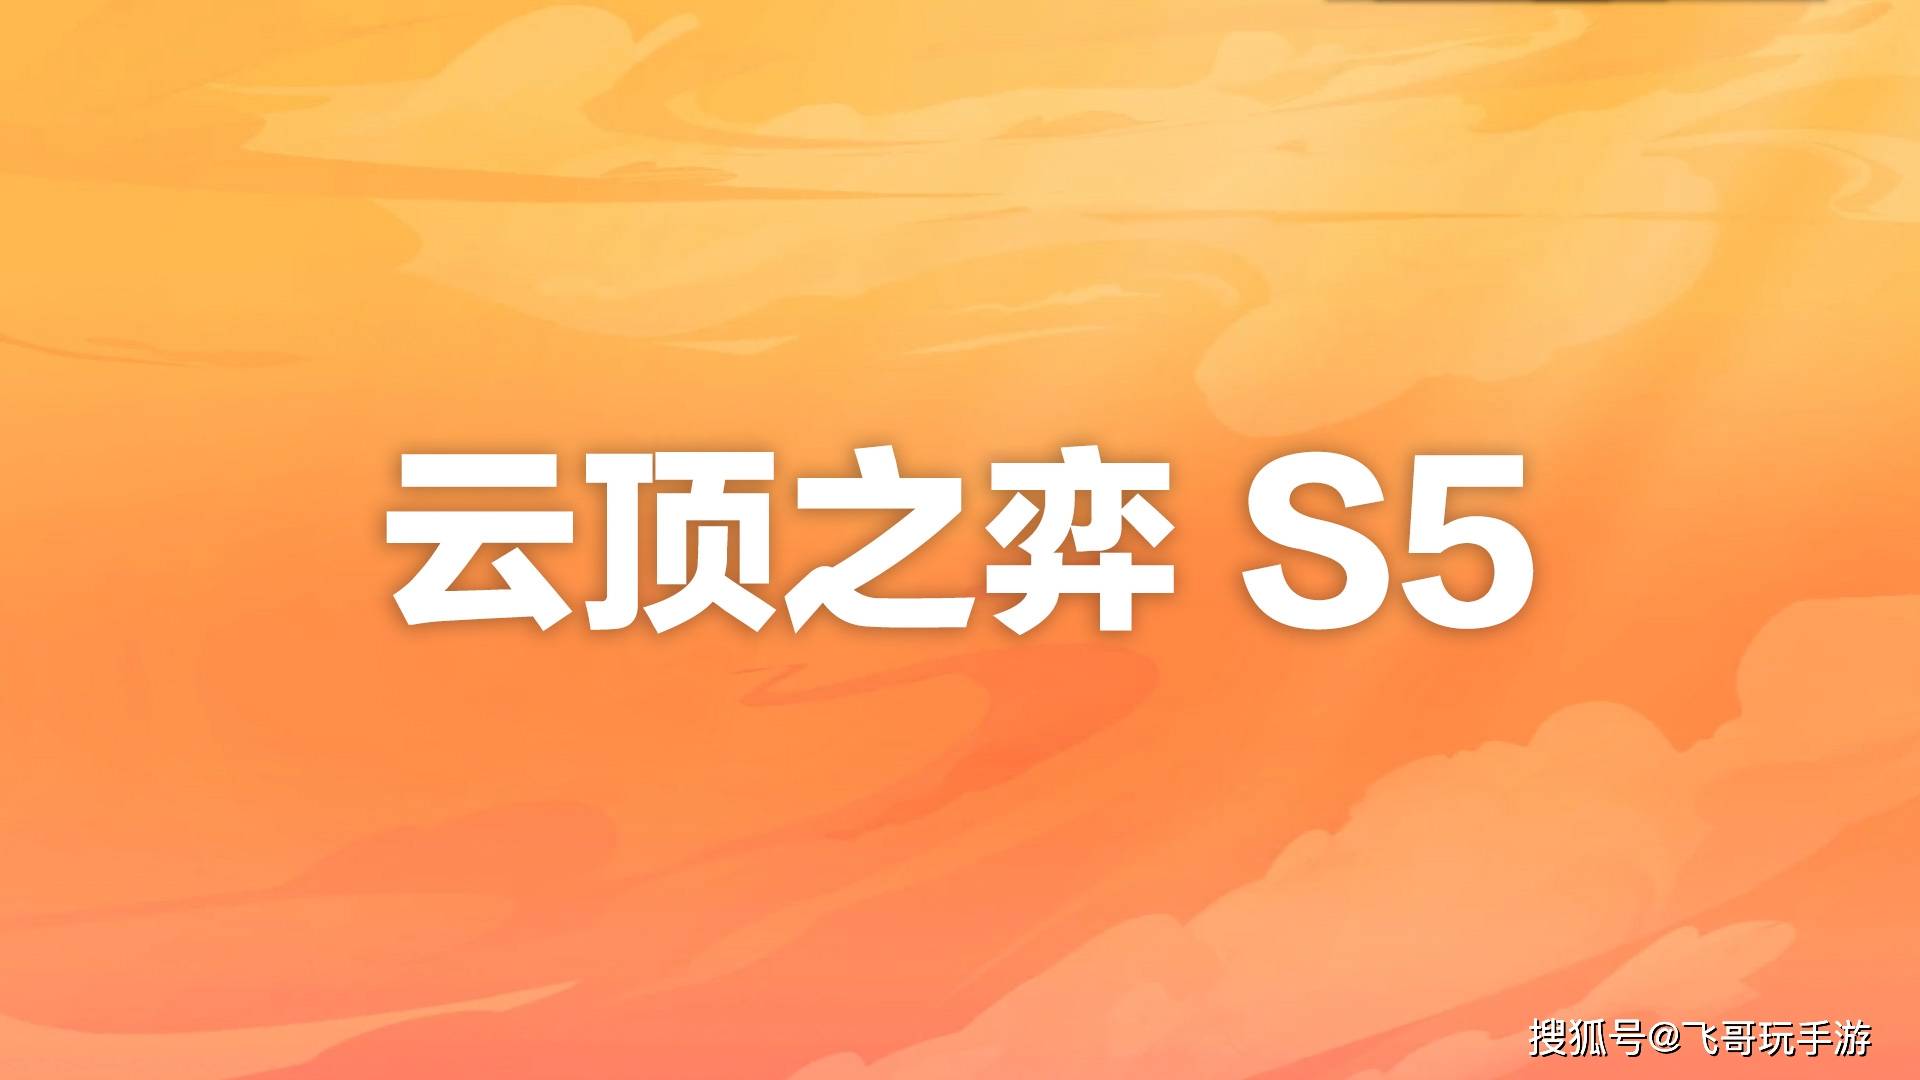 广西为青年提供住房租赁普惠金融支持 v6.84.0.27官方正式版